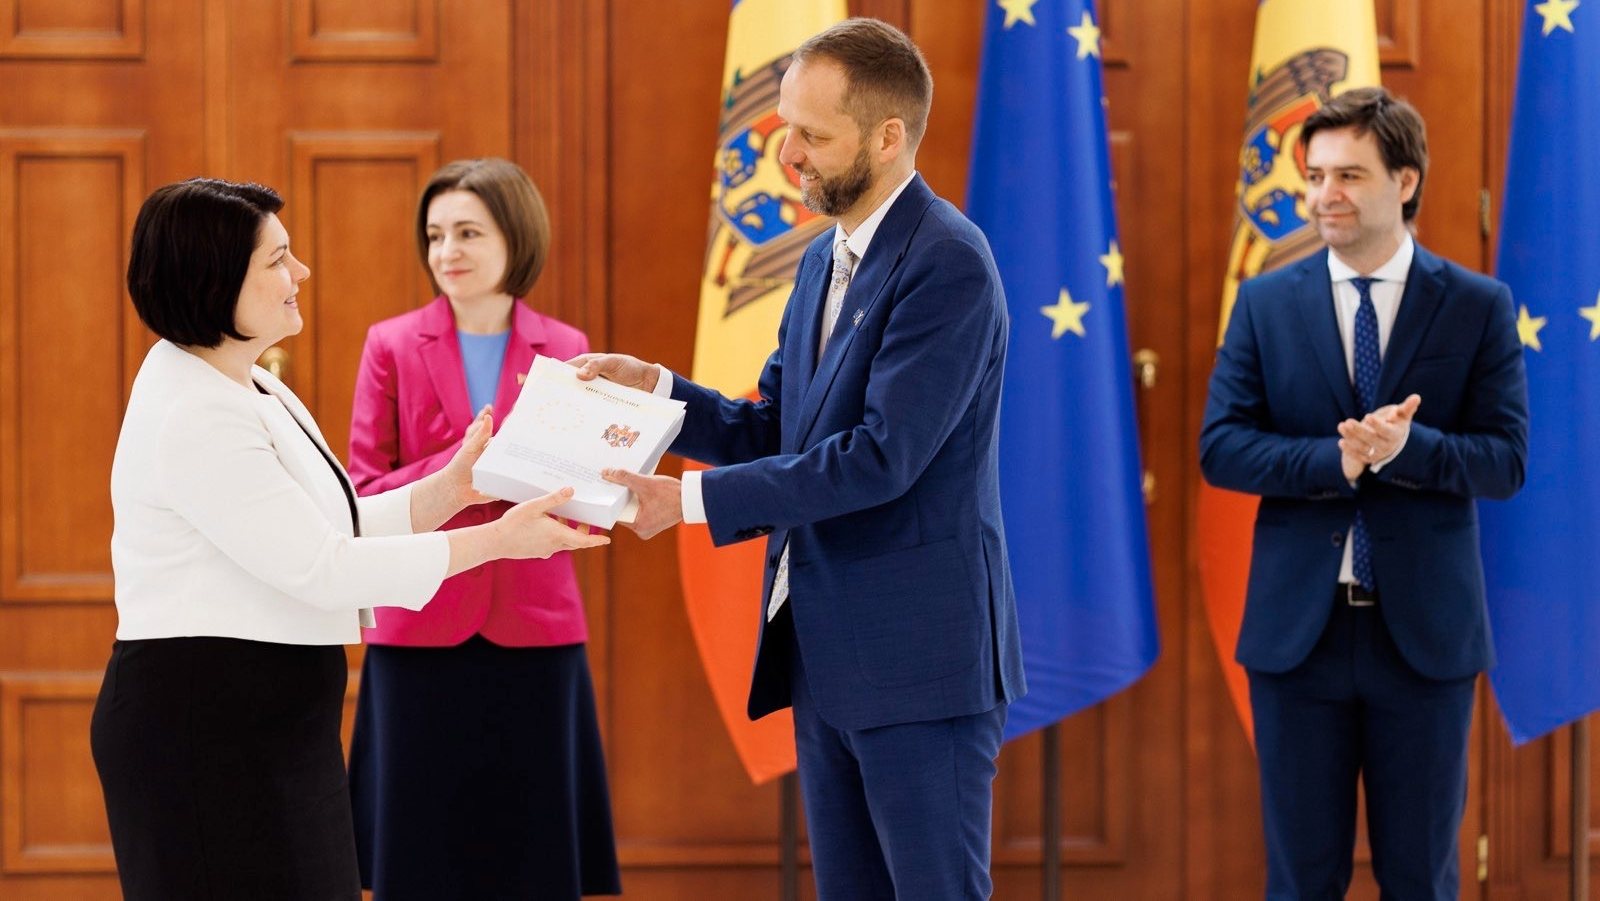 Para Nicu Popescu, o povo moldavo quer entrar na União Europeia, um espaço considerado de liberdade, estabilidade e paz